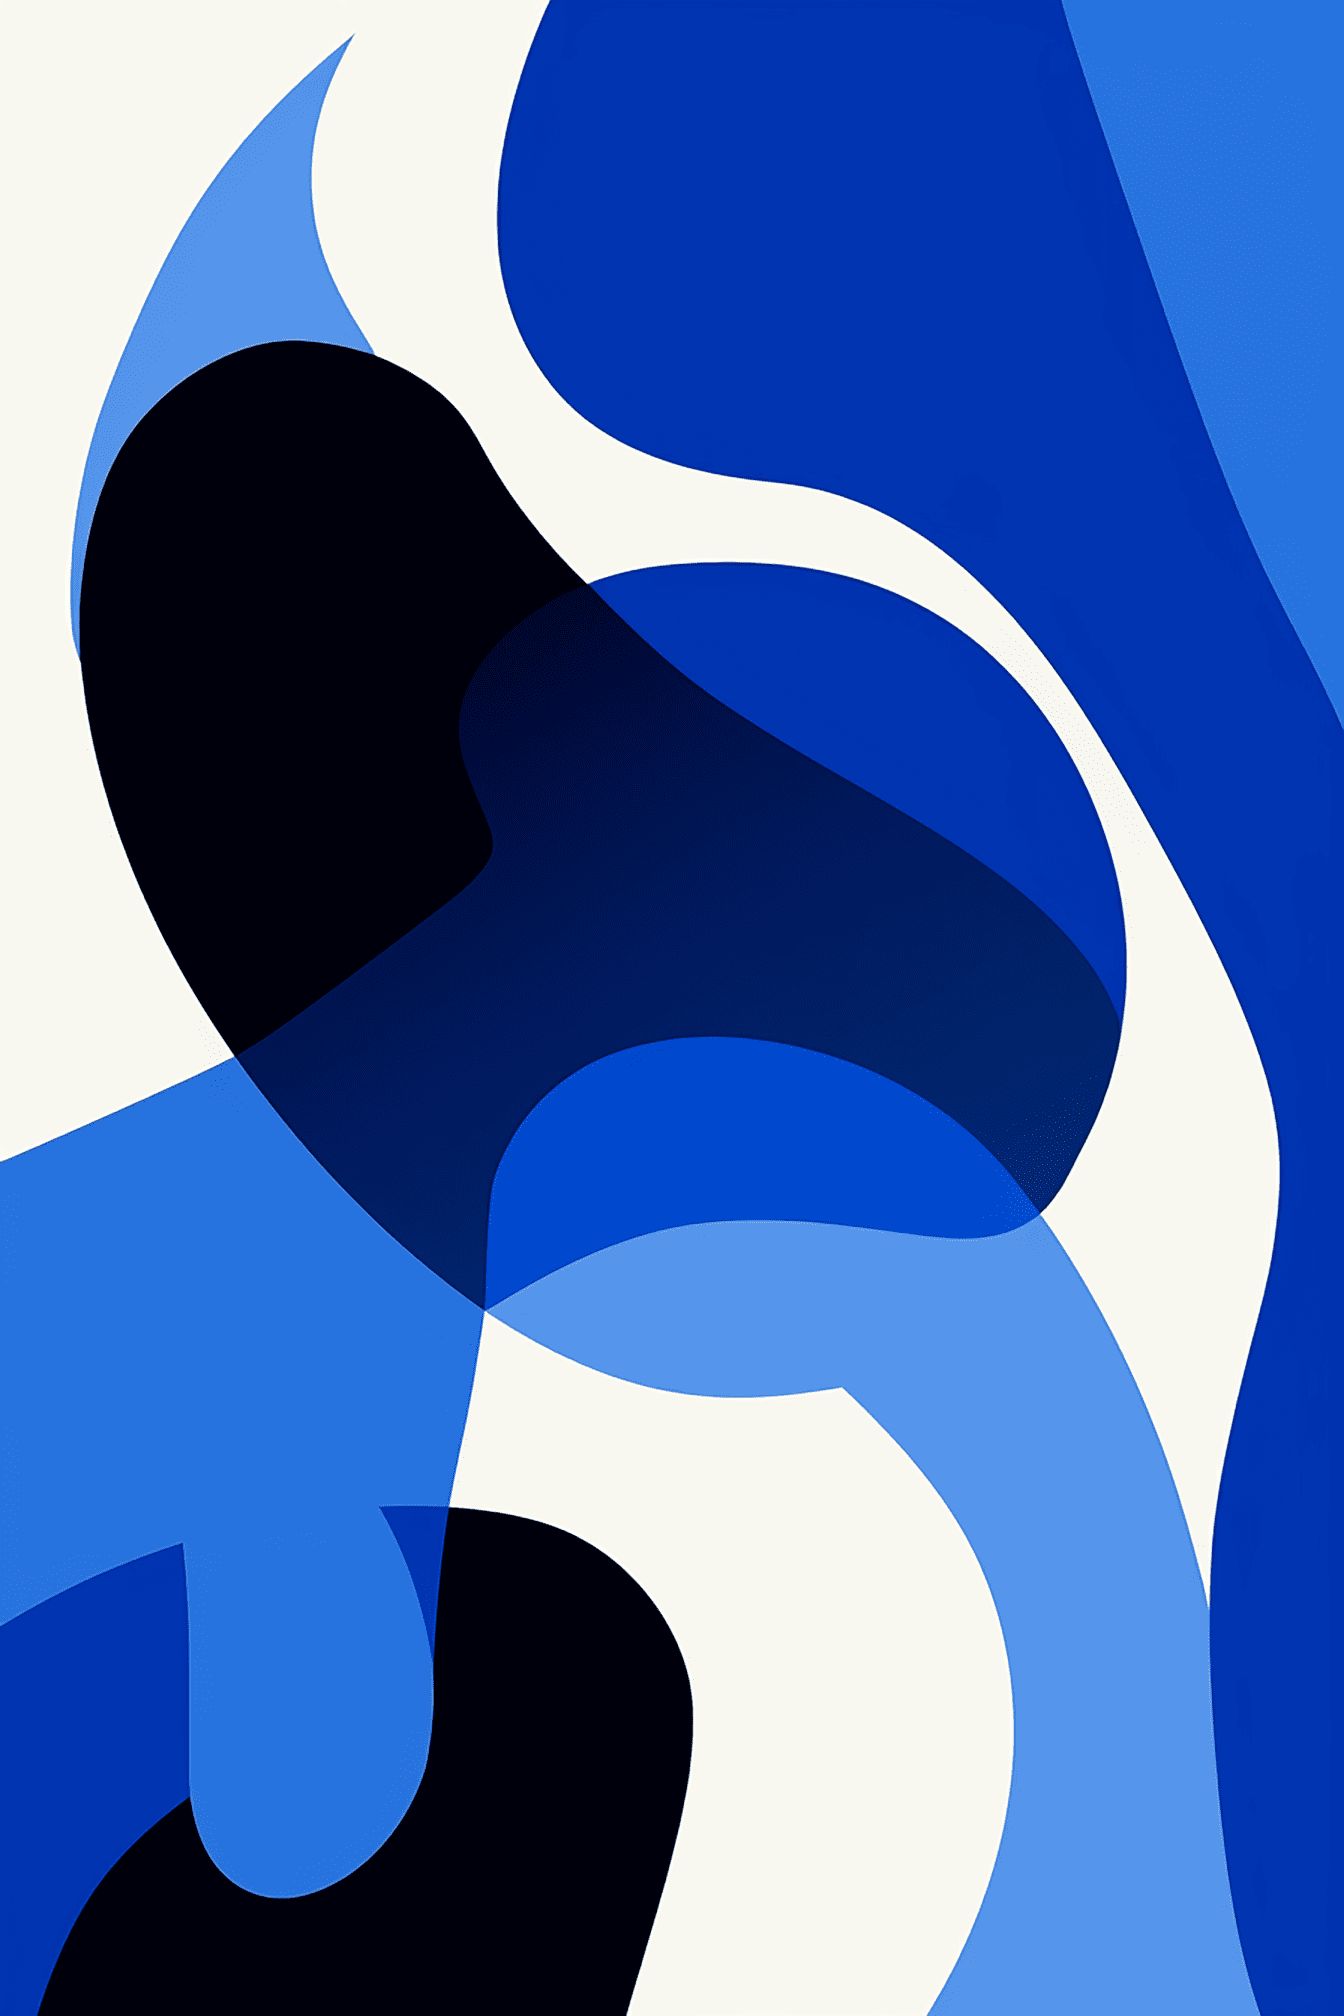 Ilustração gráfica surreal com cores azul escuro e branco